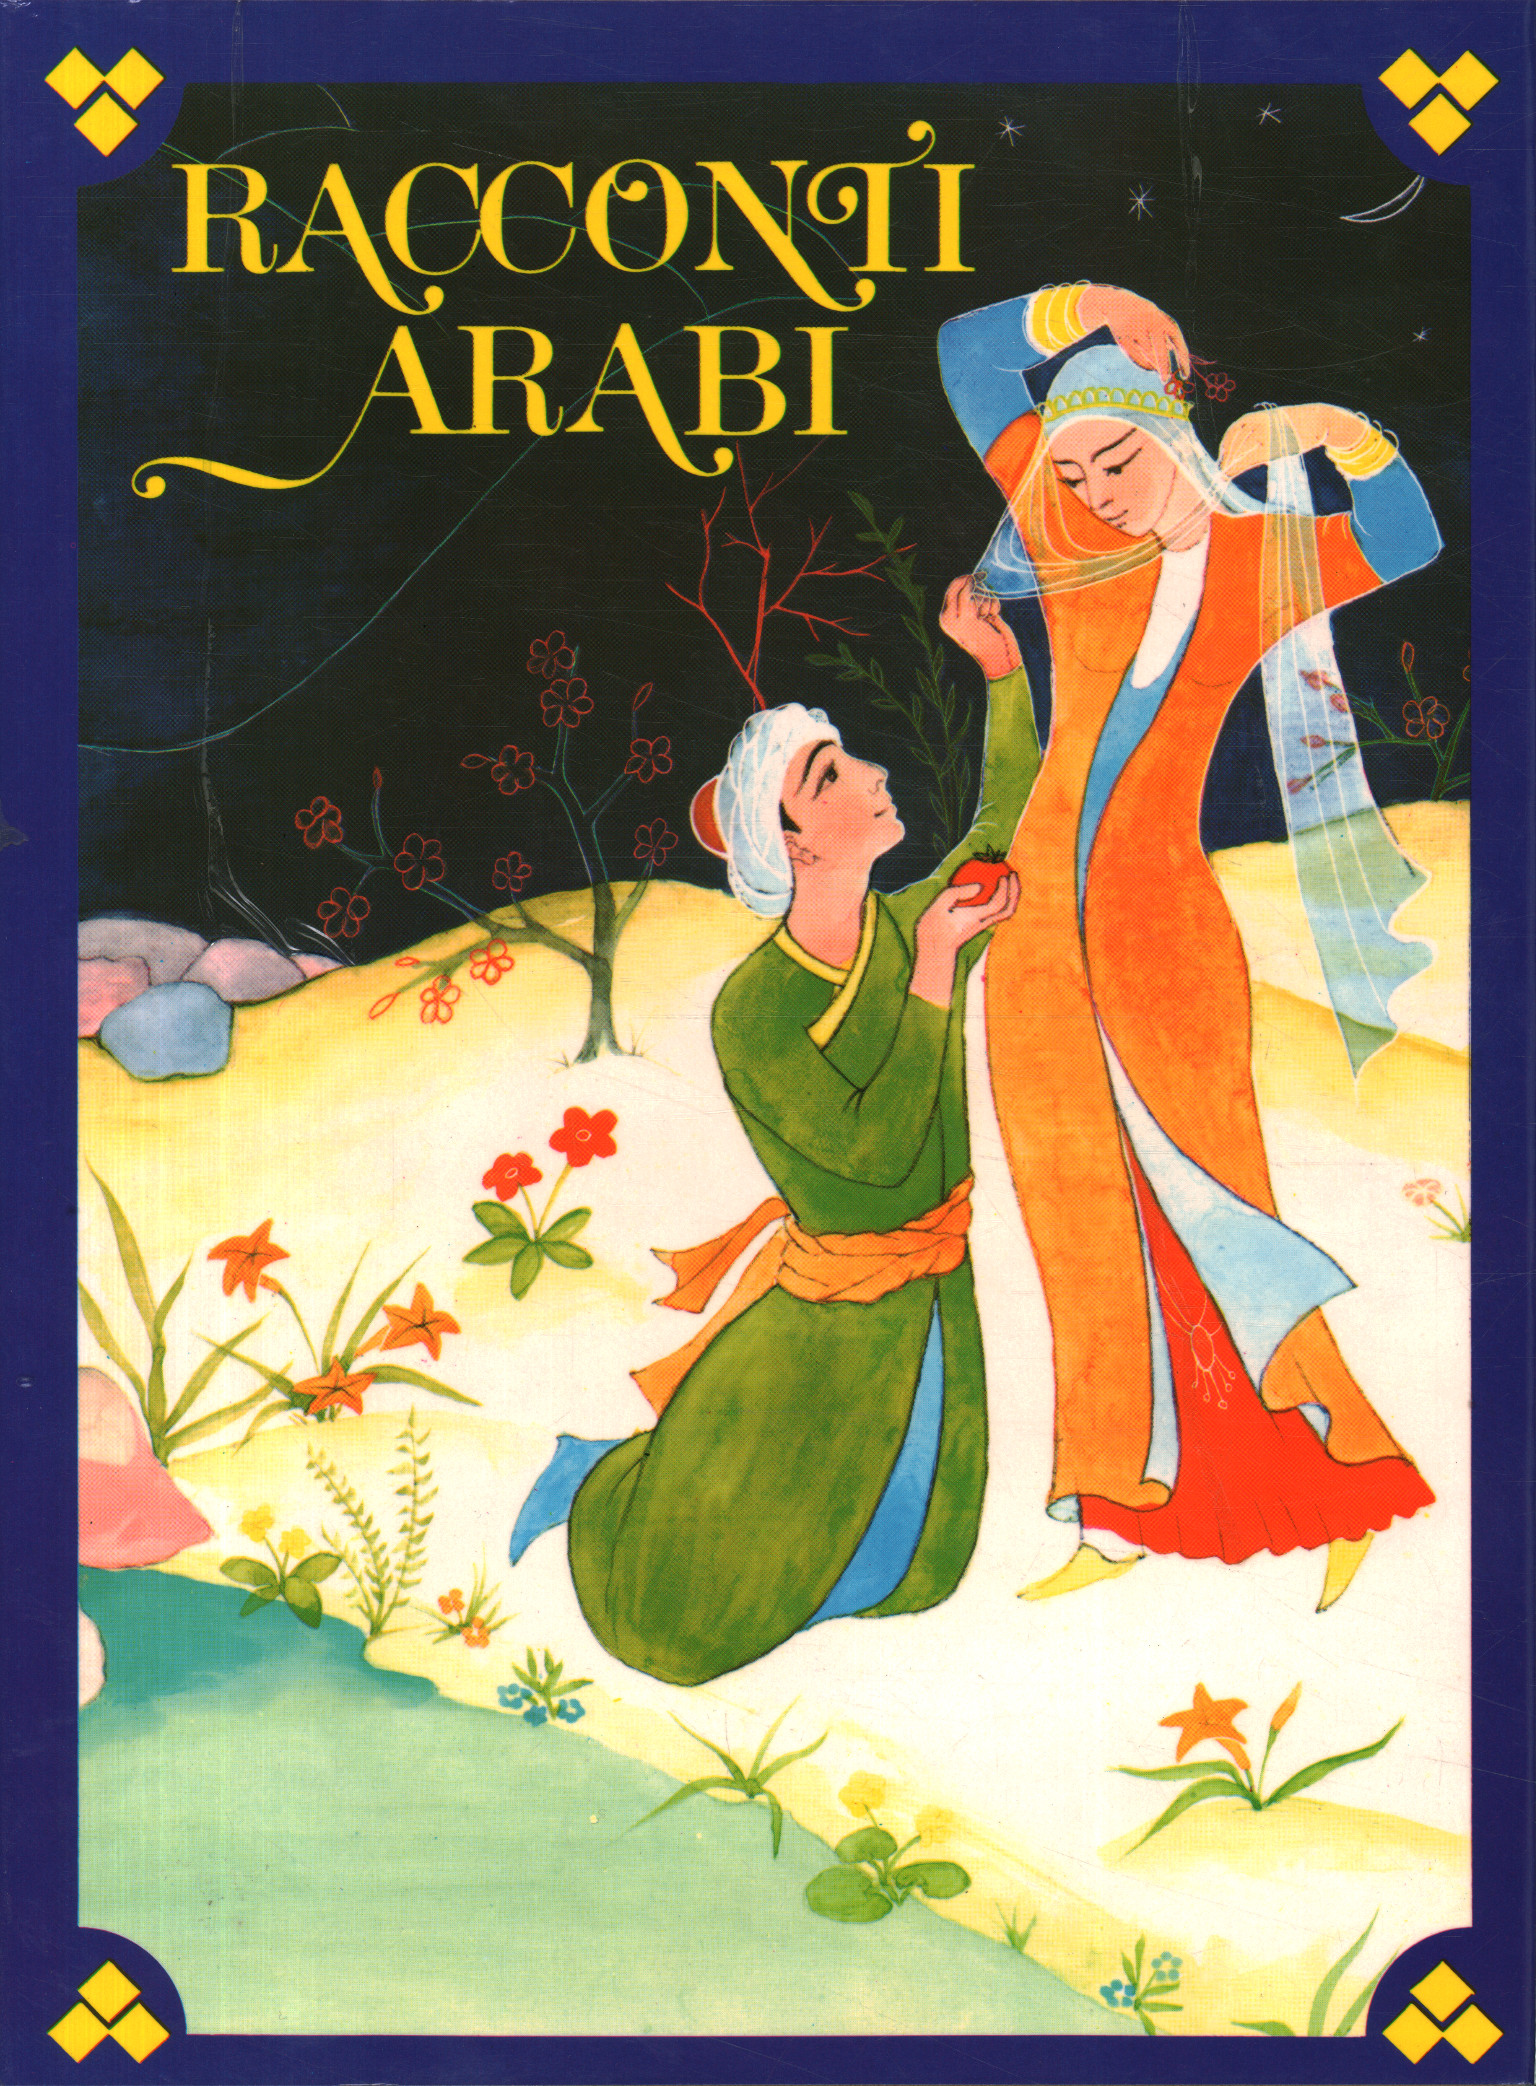 Arab tales